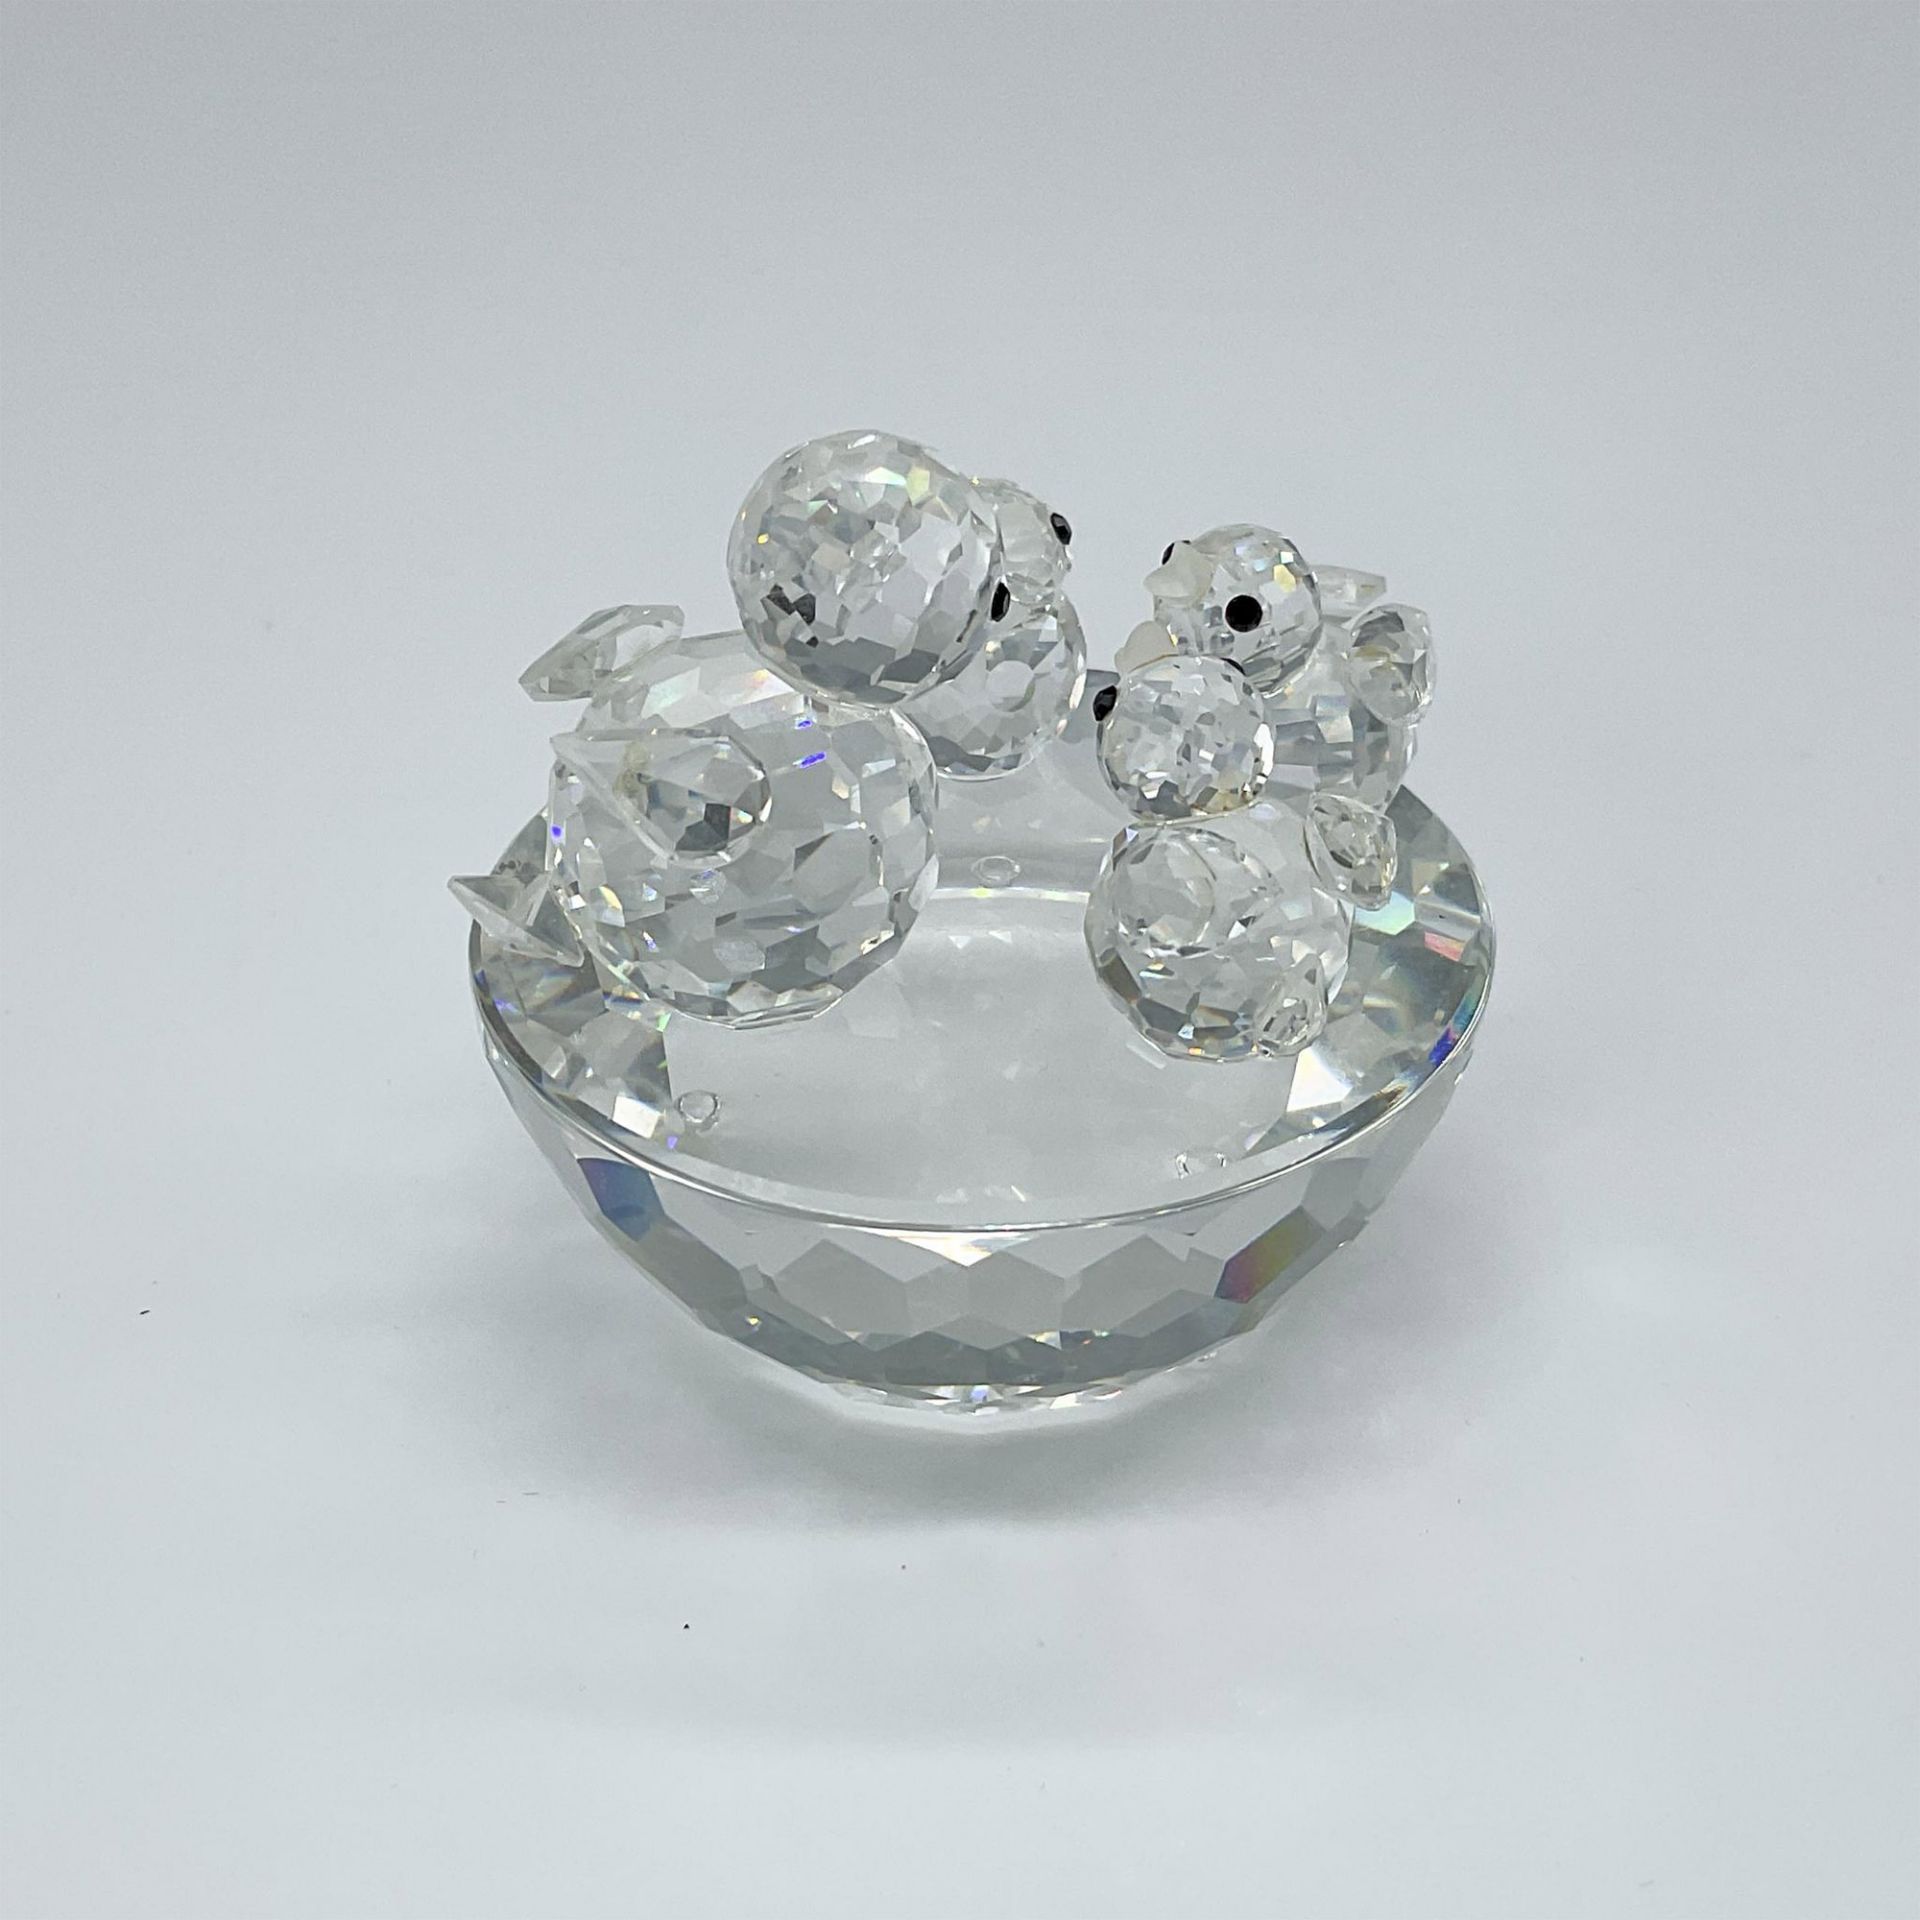 Swarovski Crystal Figurine, Bird's Nest - Image 2 of 3